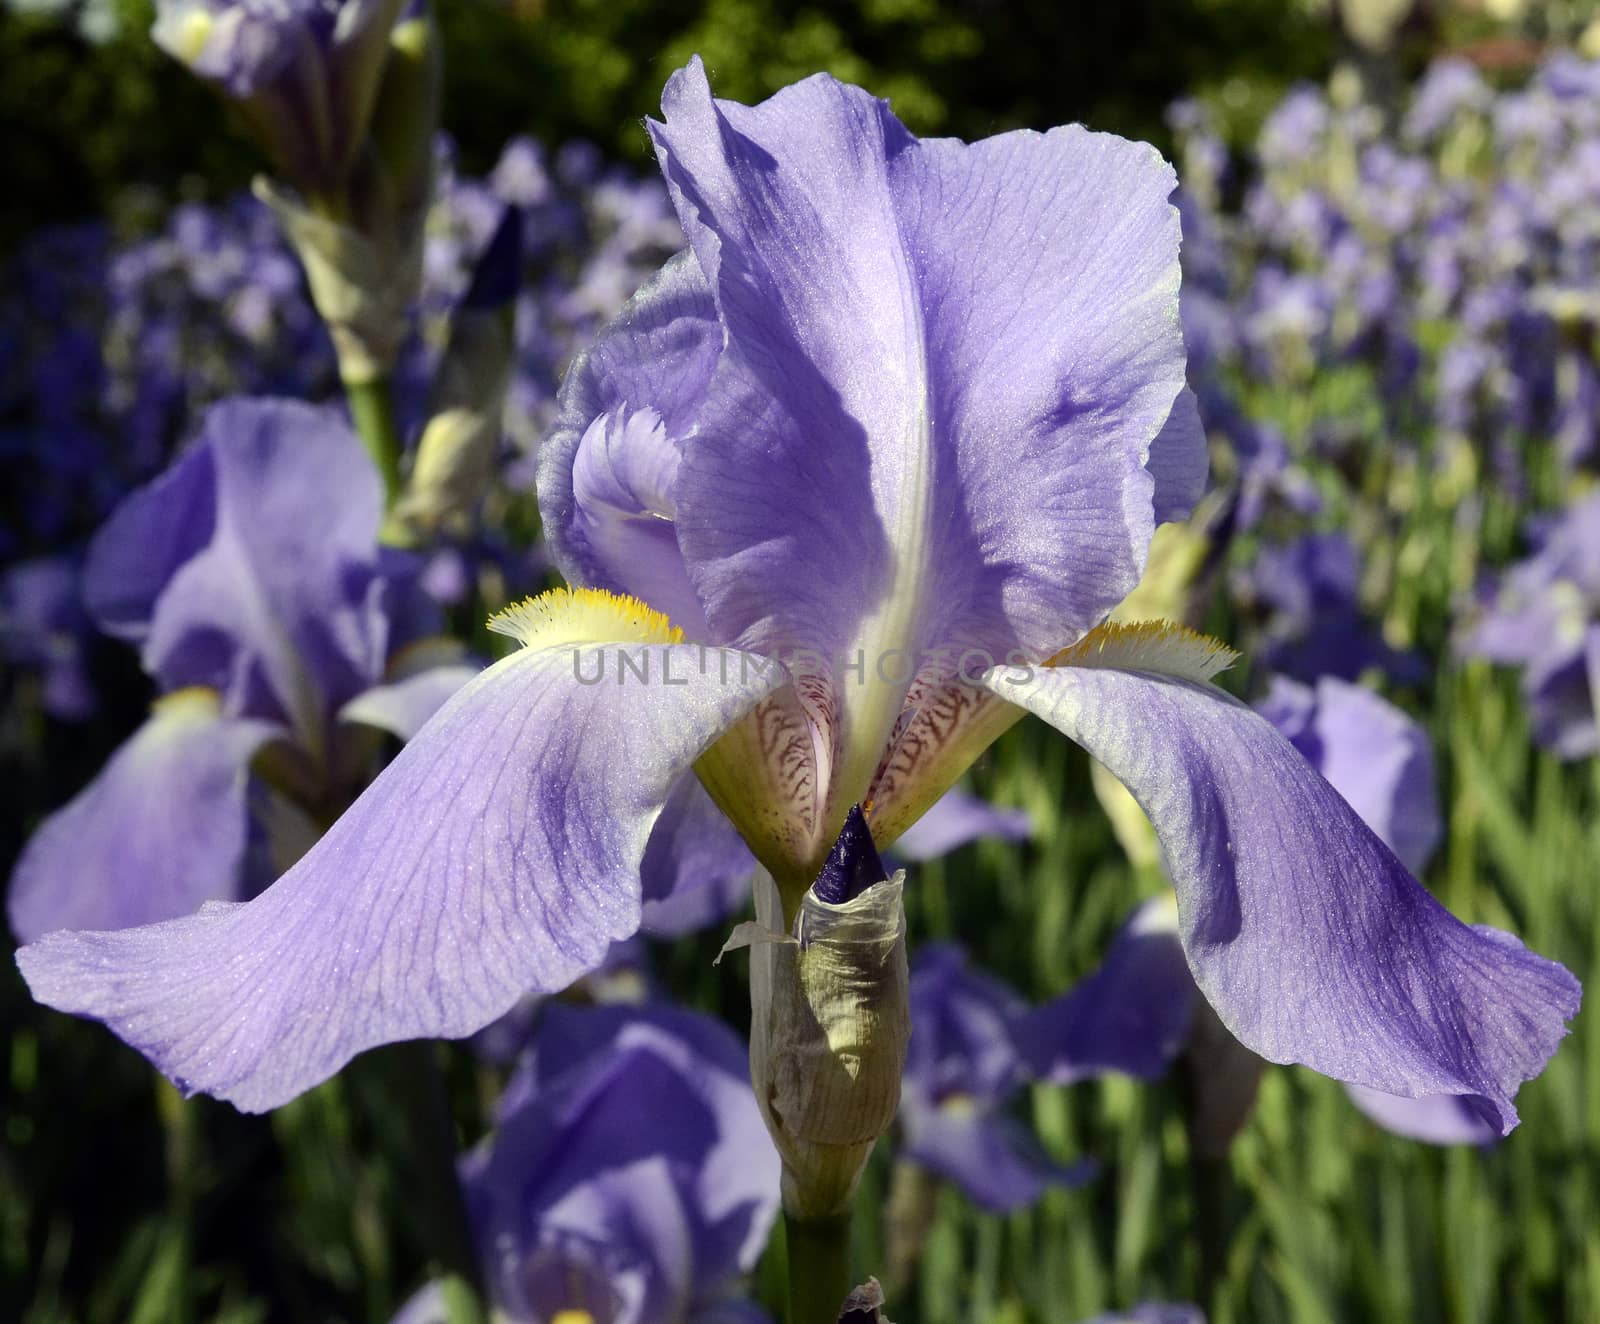 Violet iris flower on green garden background by hibrida13